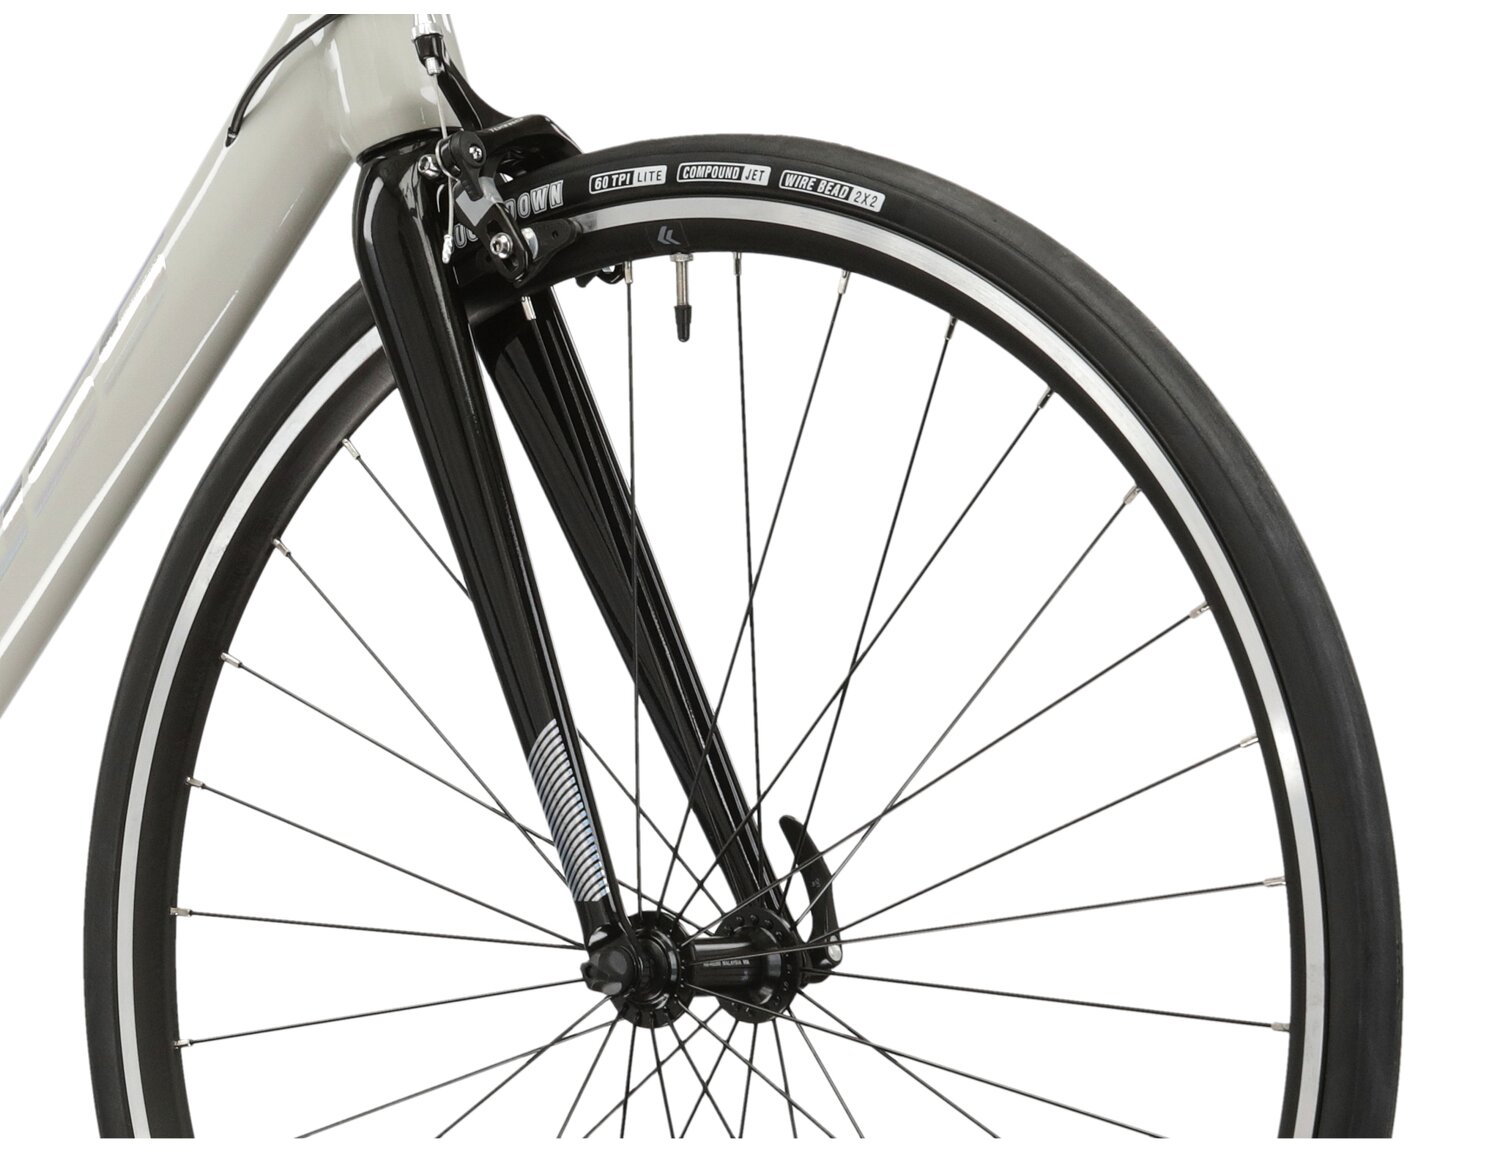  Aluminiowa rama, sztywny carbonowy widelec oraz opony Mitas w rowerze szosowym KROSS Vento 2.0 